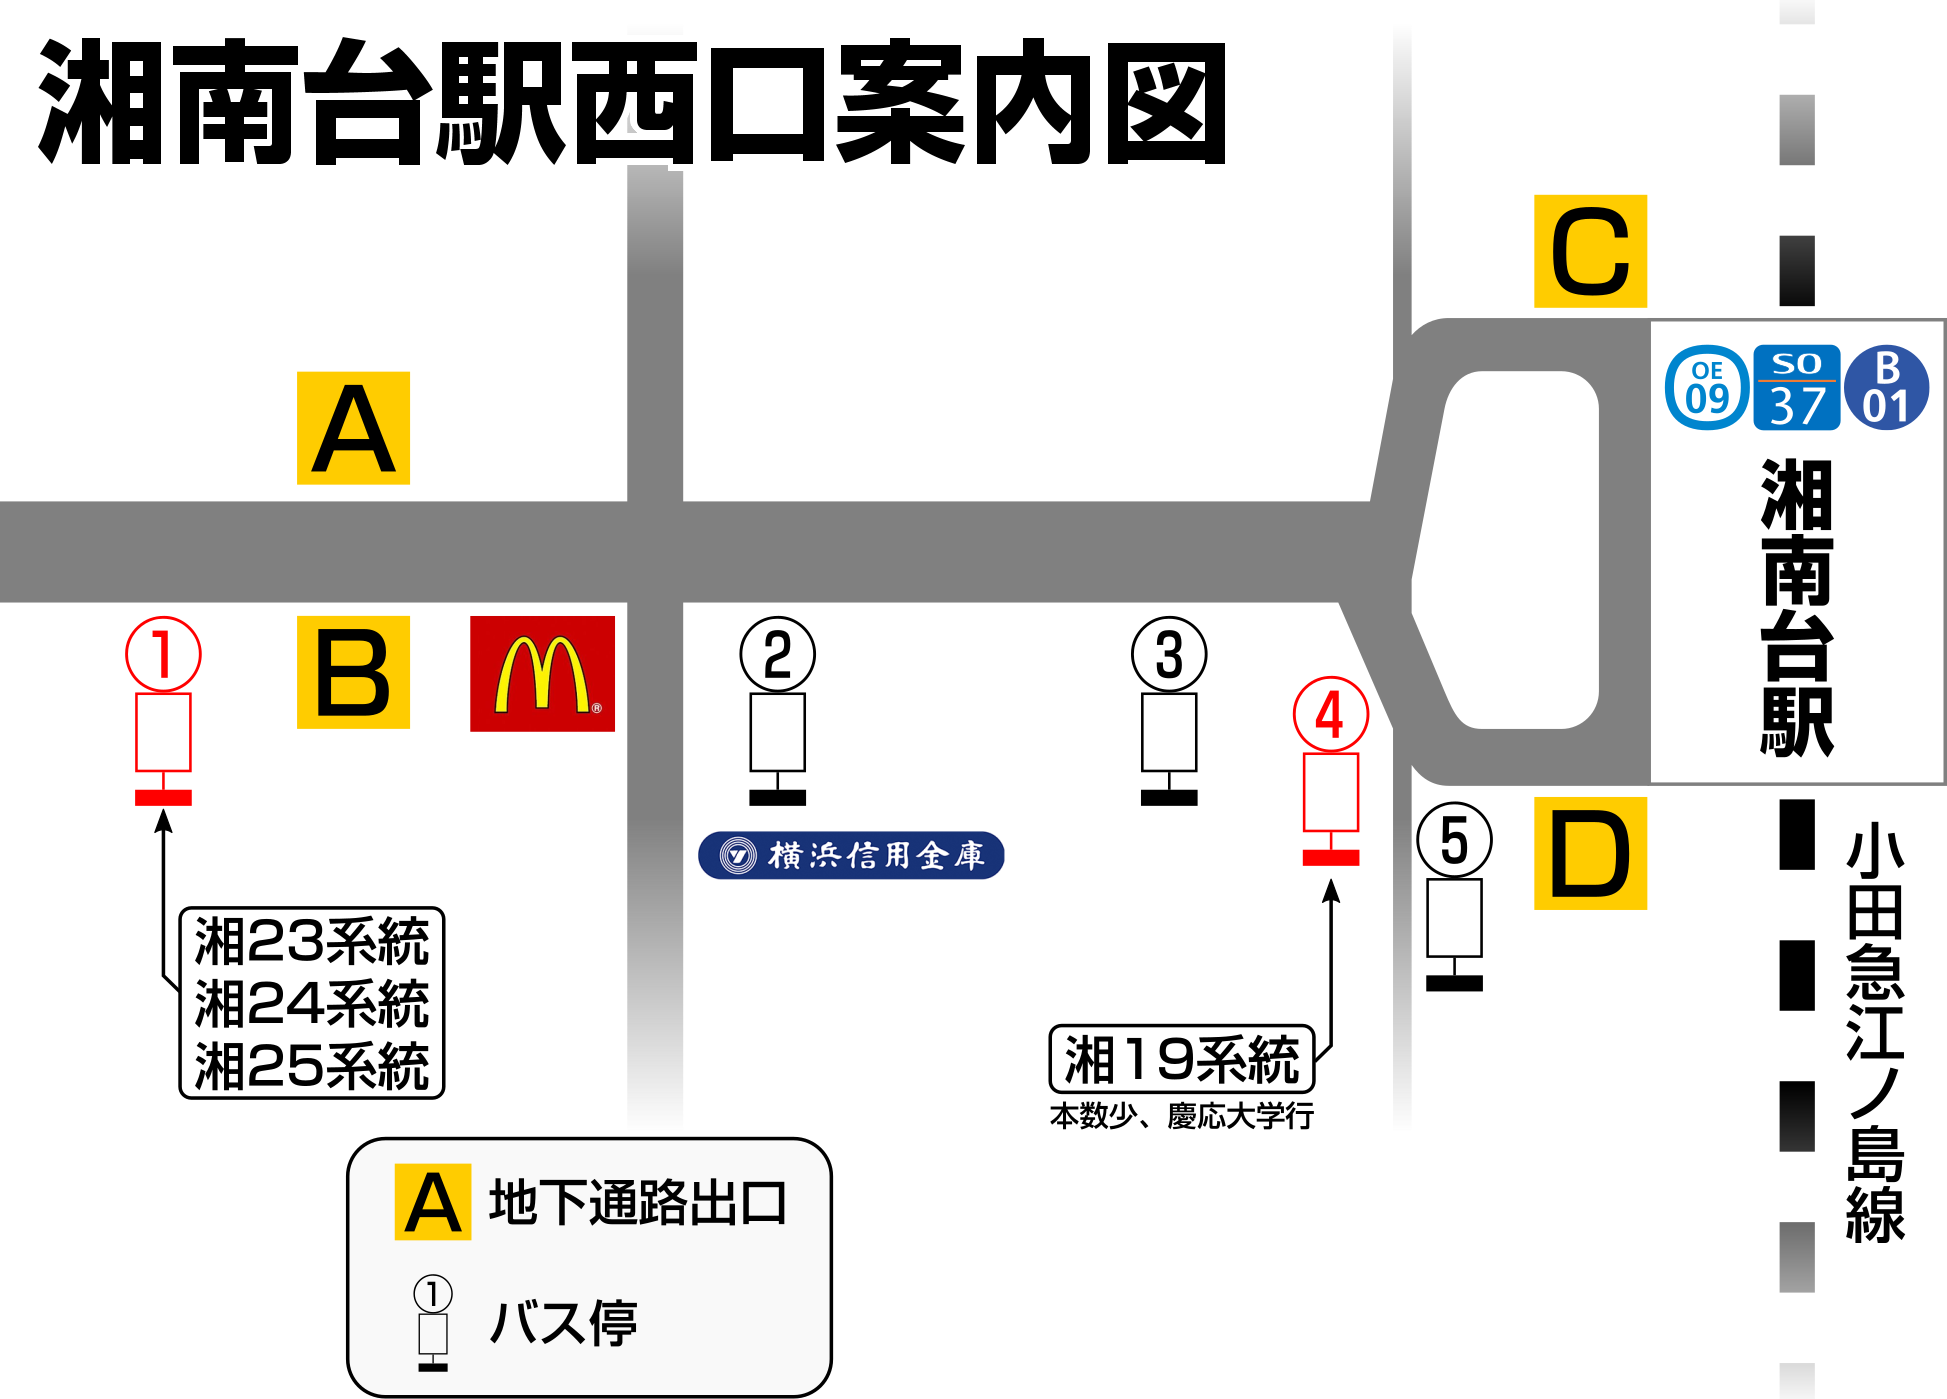 湘南台駅地下通路出口「D」出てすぐ「1」番乗り場より神奈中バス湘23･24･25系統